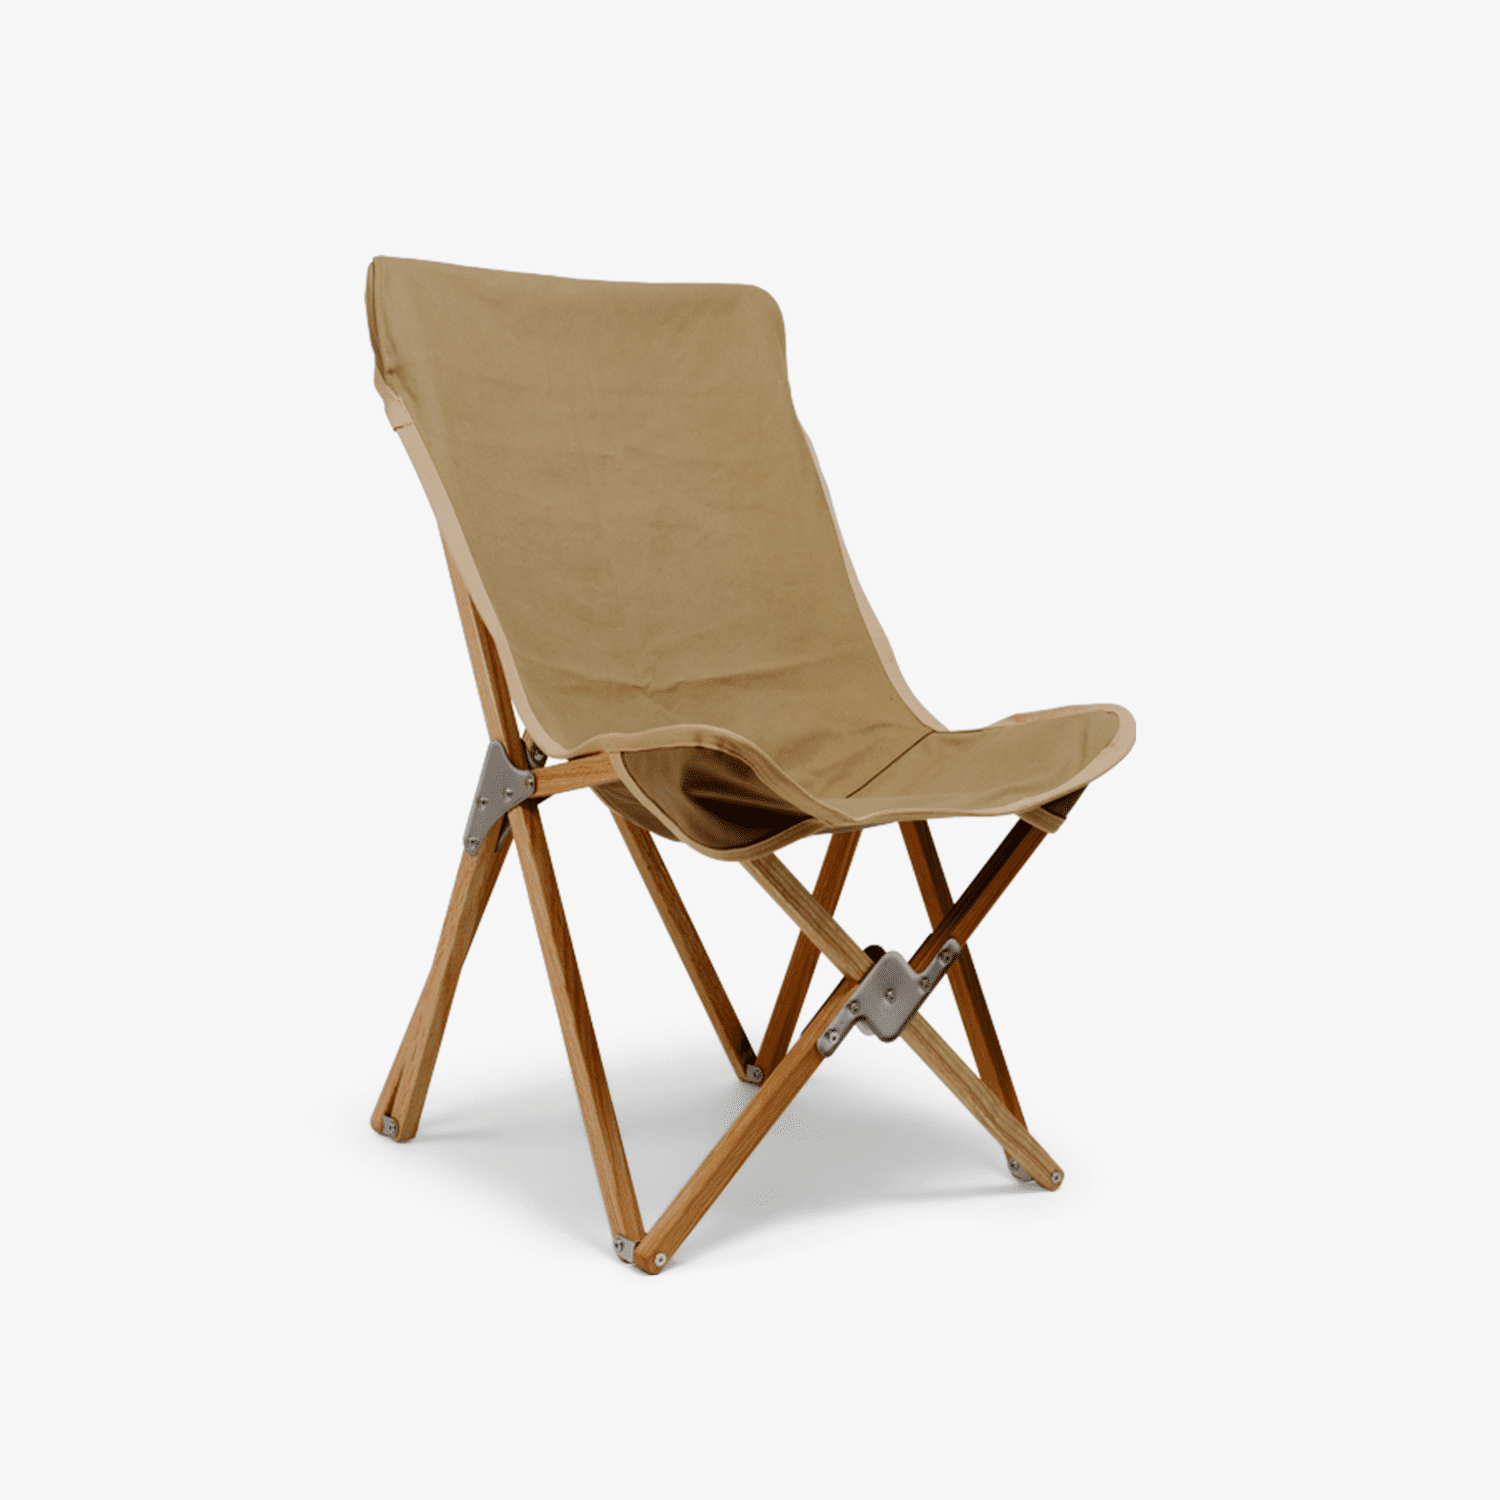 Handmade Oak Camp Chairs by Homecamp